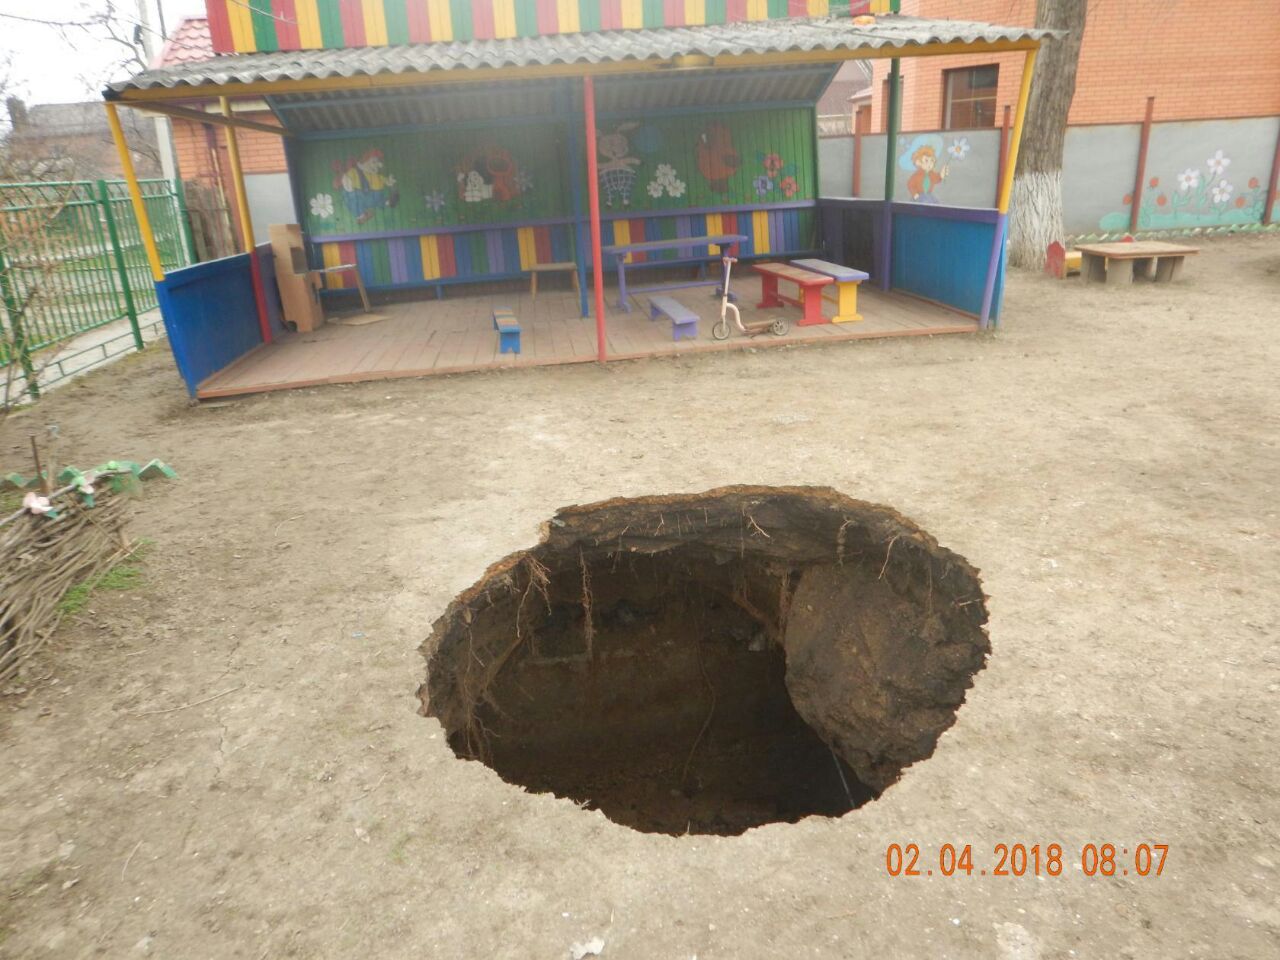 Часть детского сада в Таганроге поглотила огромная яма